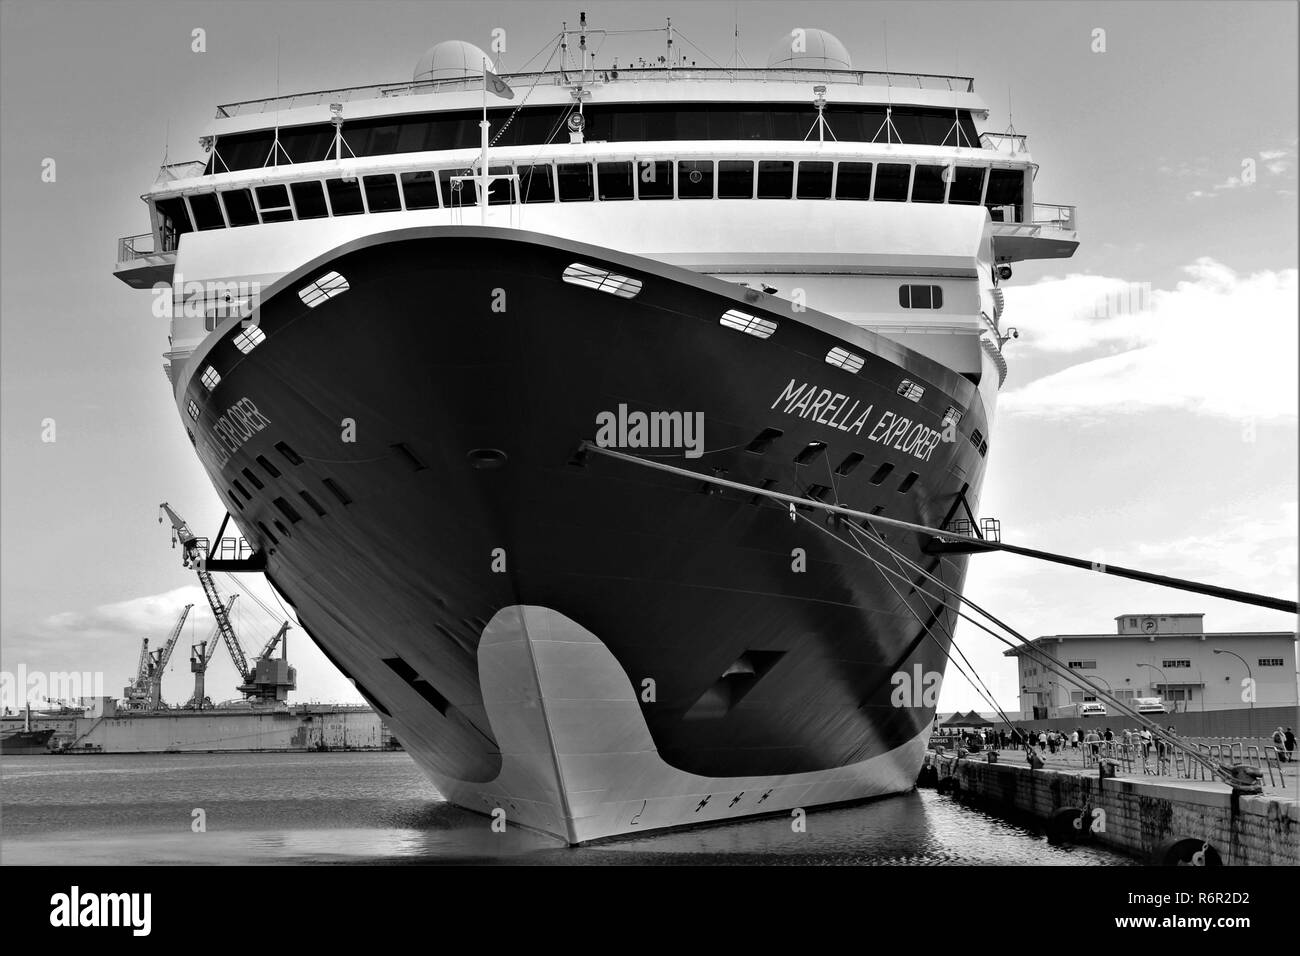 Palerme, Sicile, Italie - 22 octobre 2018 : La Marella Explorer TUI Cruises bateau amarré dans le port de Palerme. Banque D'Images